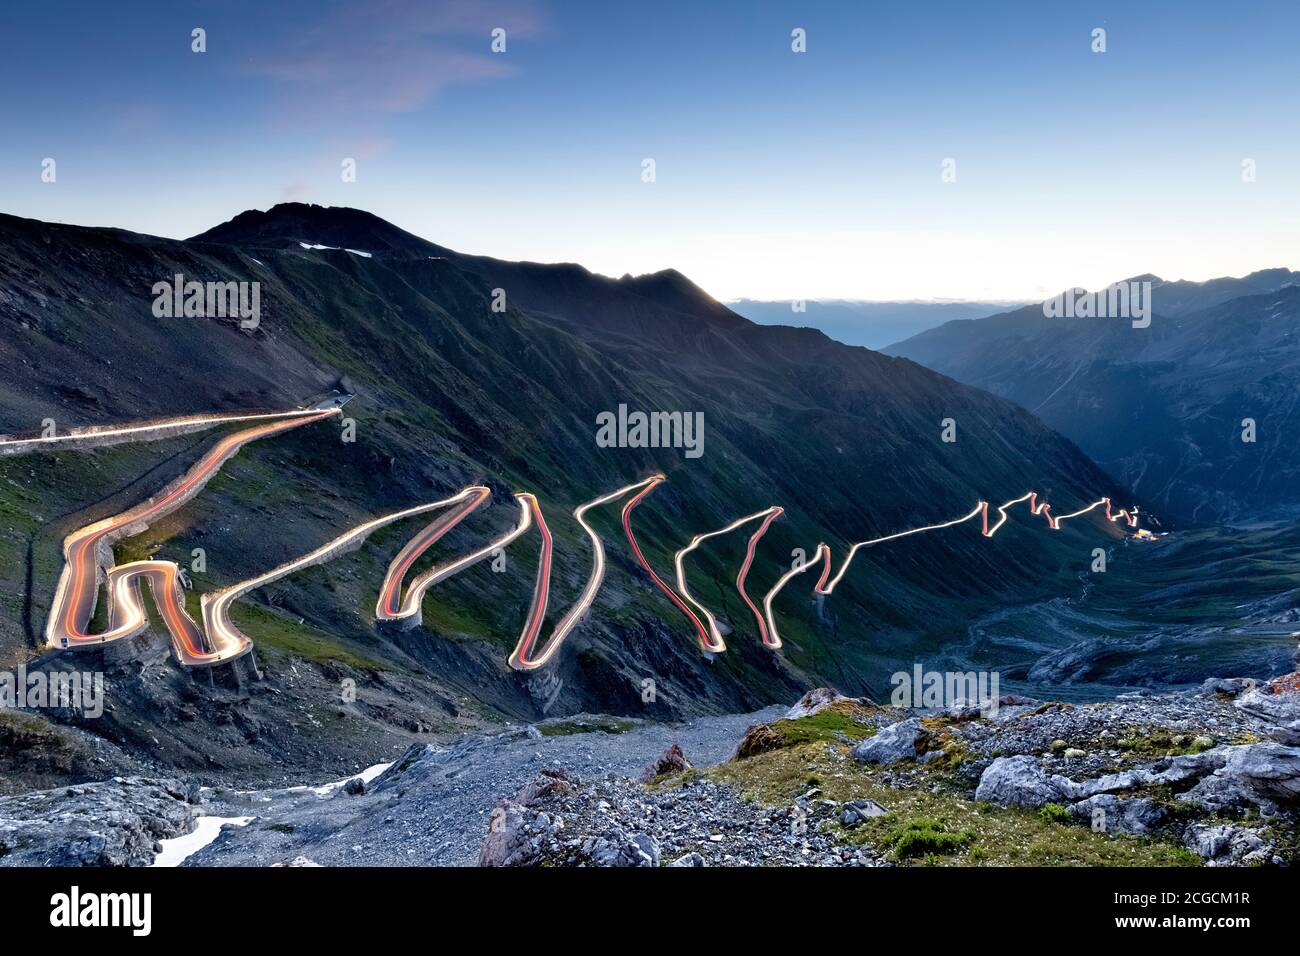 The Stelvio pass road at dawn. Trafoi valley, Bolzano province, Trentino Alto-Adige, Italy, Europe. Stock Photo